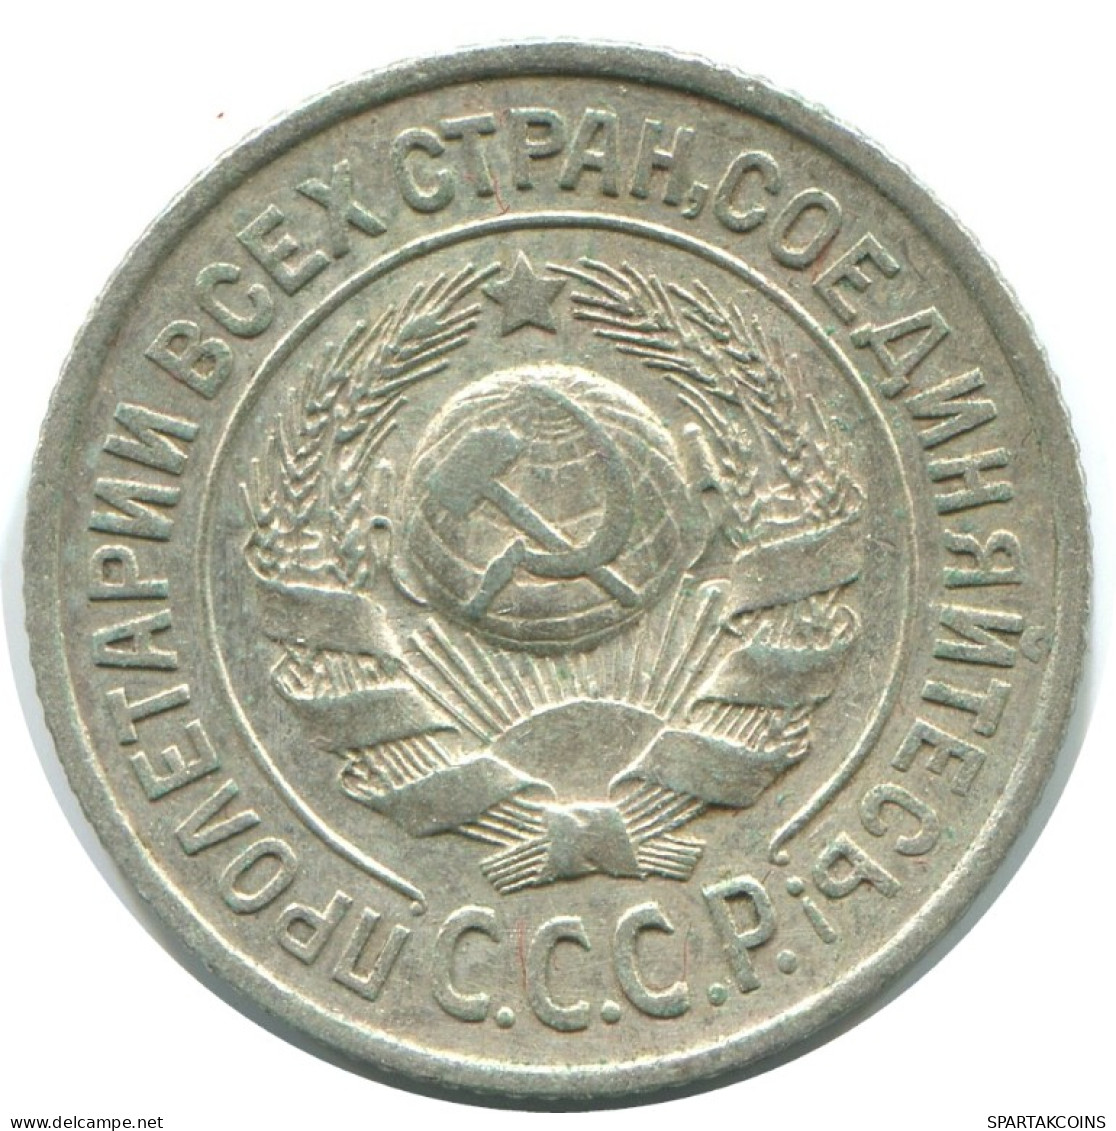 15 KOPEKS 1925 RUSSLAND RUSSIA USSR SILBER Münze HIGH GRADE #AF263.4.D.A - Russia